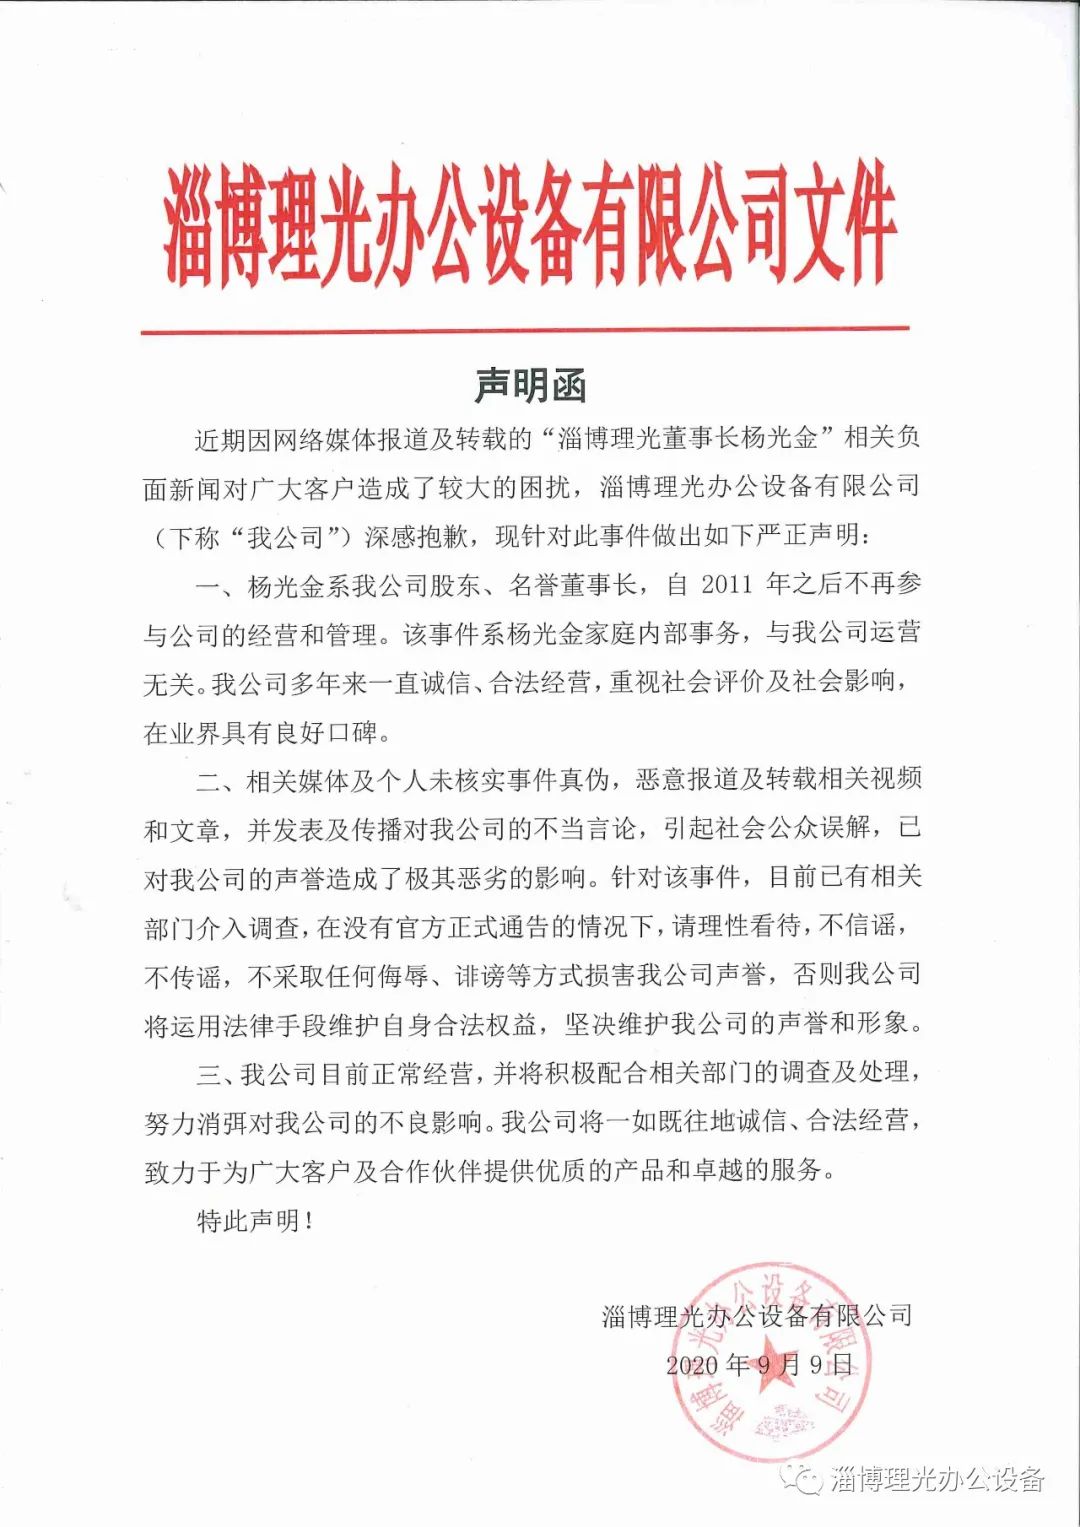  “淄博理光办公设备”微信公众号9月9日发布《淄博理光声明函》。